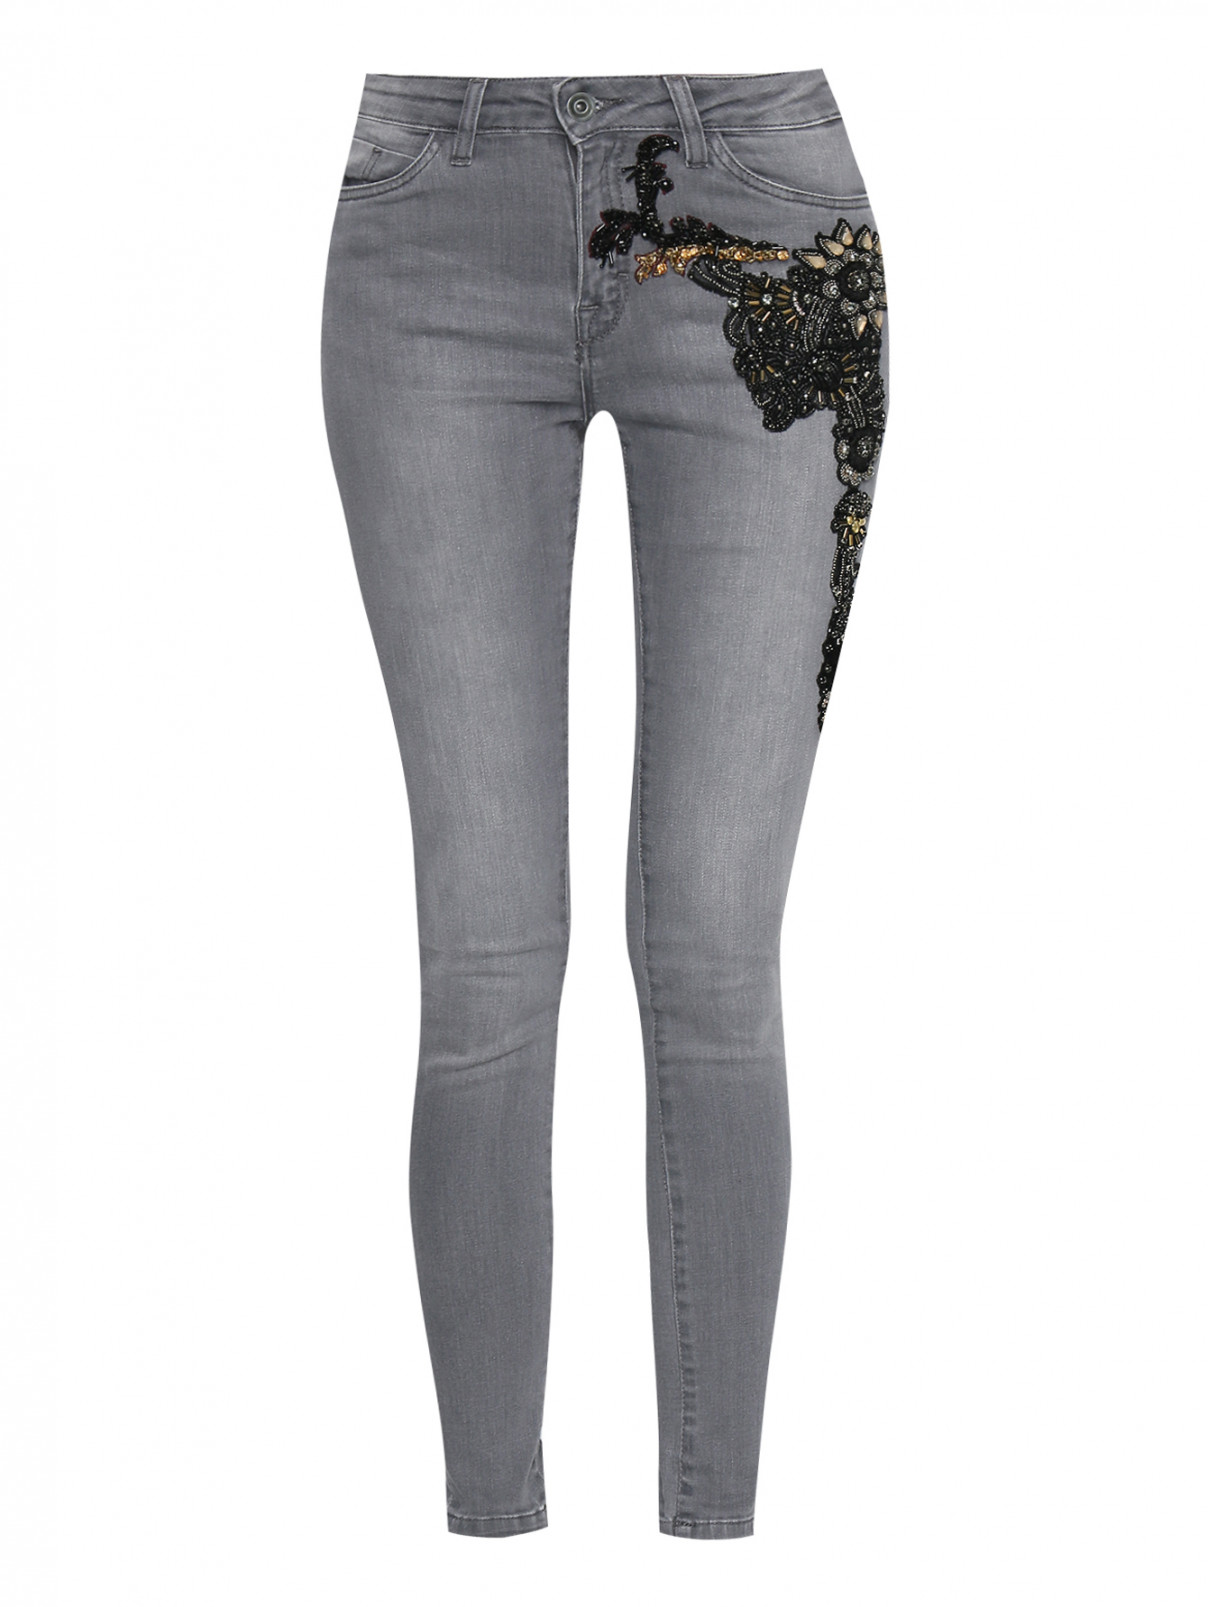 Узкие джинсы из хлопка декорированные стразами Antonio Marras  –  Общий вид  – Цвет:  Серый